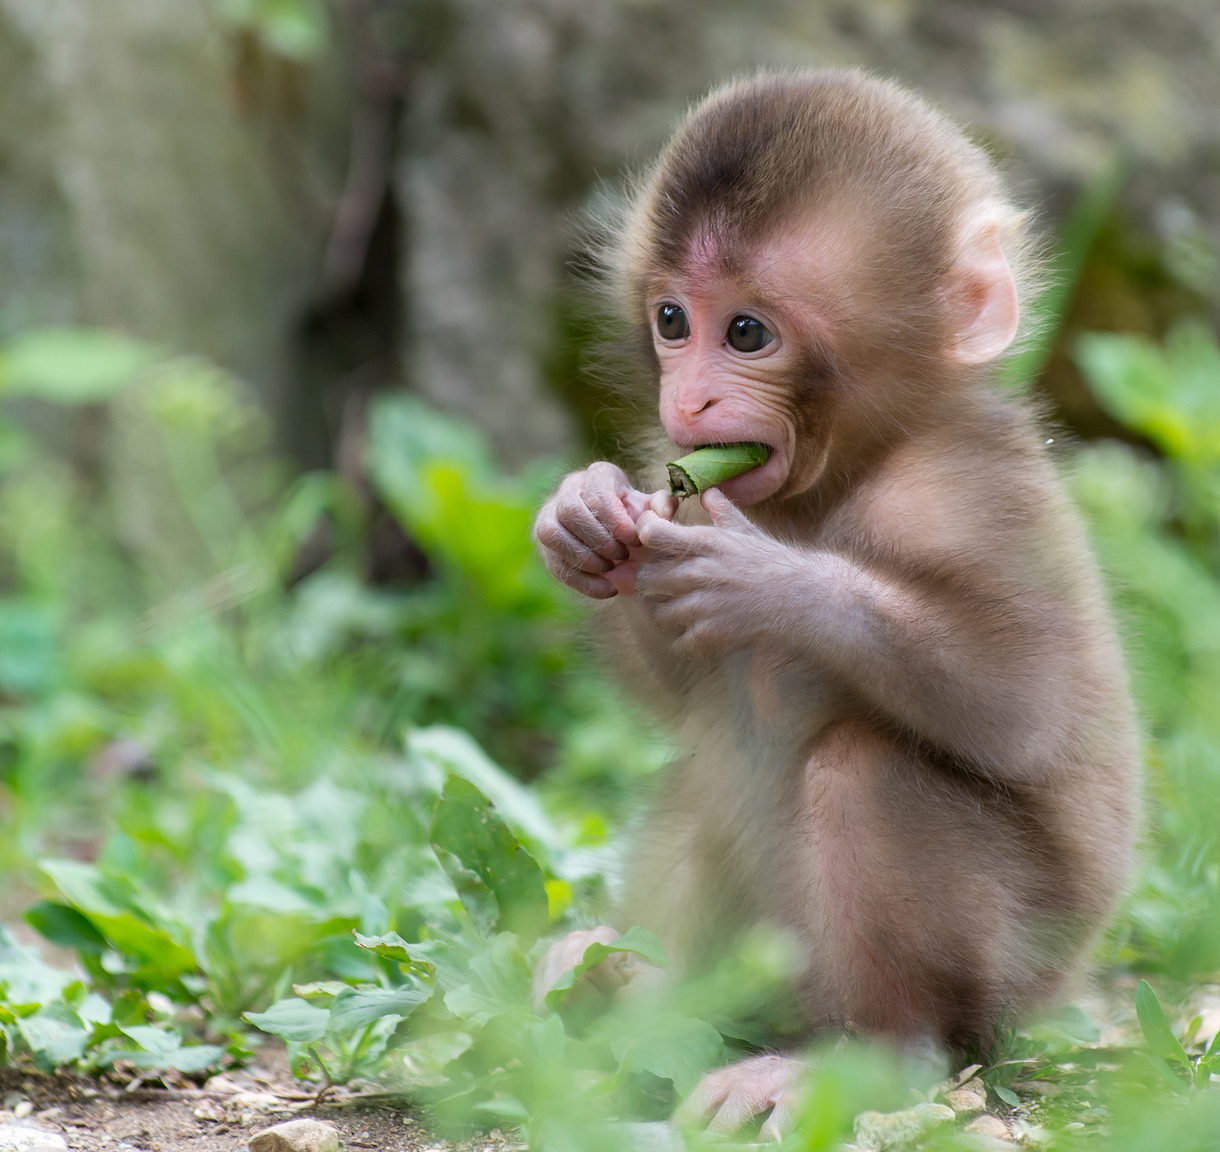 Con khỉ - những chú vật vô cùng dễ thương và đáng yêu, luôn khiến cho chúng ta không thể rời mắt được. Và hình ảnh con khỉ cute càng khiến cho người xem phải say đắm. Chúng tôi sưu tập những hình ảnh đẹp nhất, ngộ nghĩnh nhất và đáng yêu nhất về con khỉ. Hãy đến với chúng tôi để thỏa sức chiêm ngưỡng nhé!